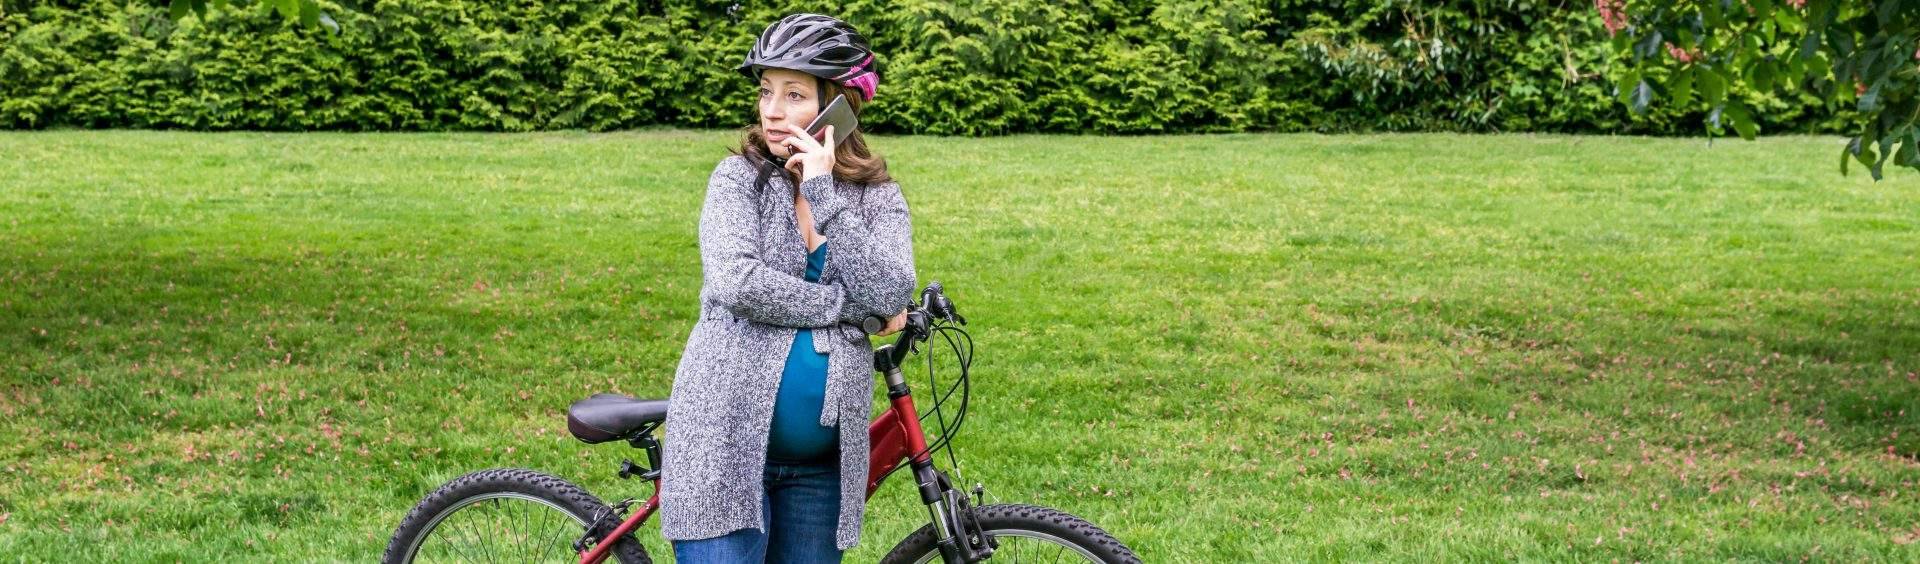 andar de bicicleta na gravidez